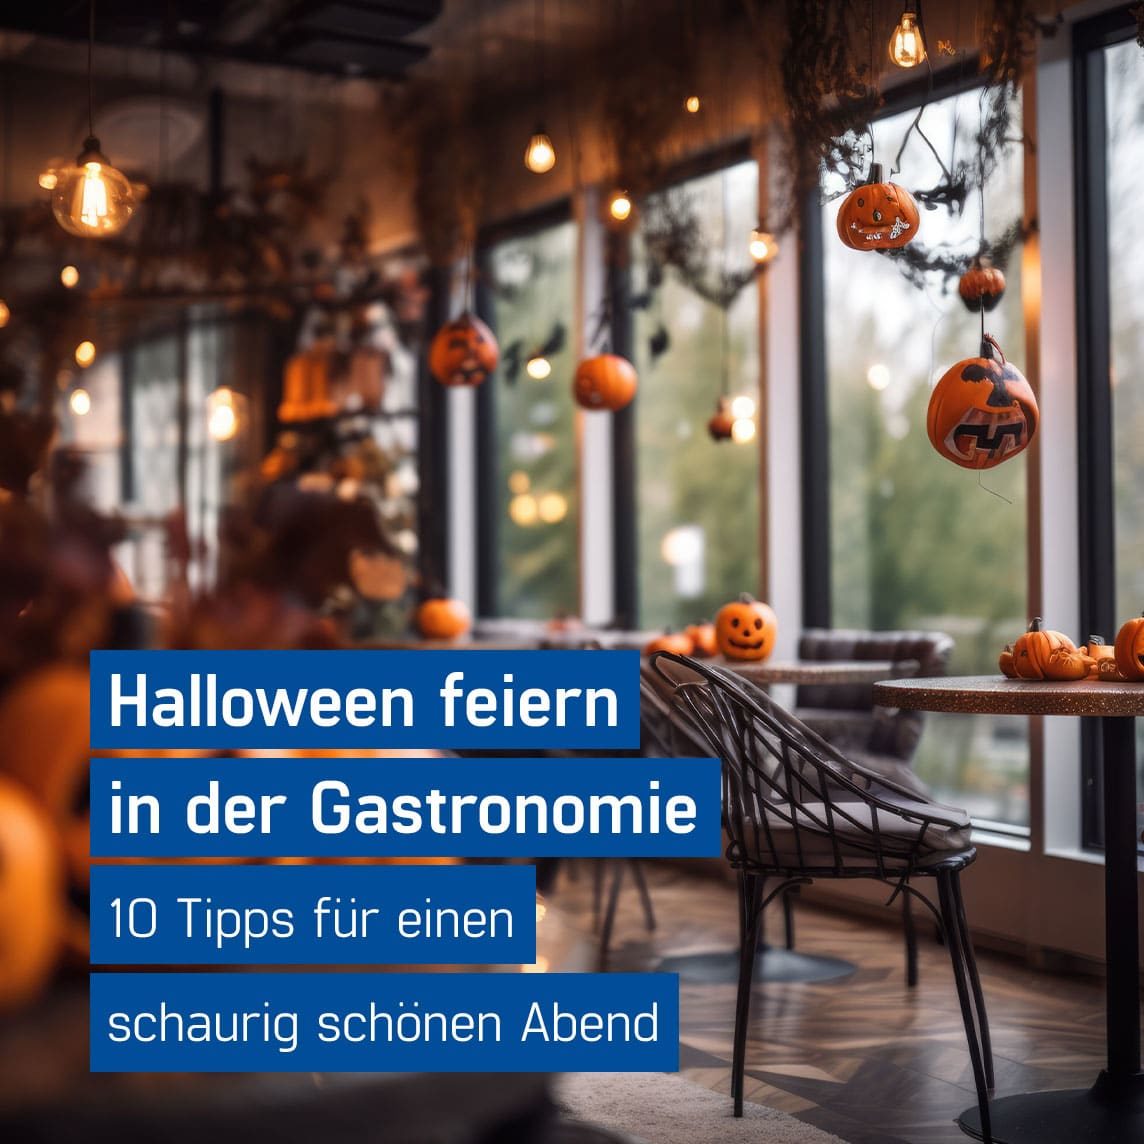 Restaurant mit einladender Halloween Dekoration aus Kürbissen und Lichterketten - Halloween Restaurants Tipps von GastroSoft